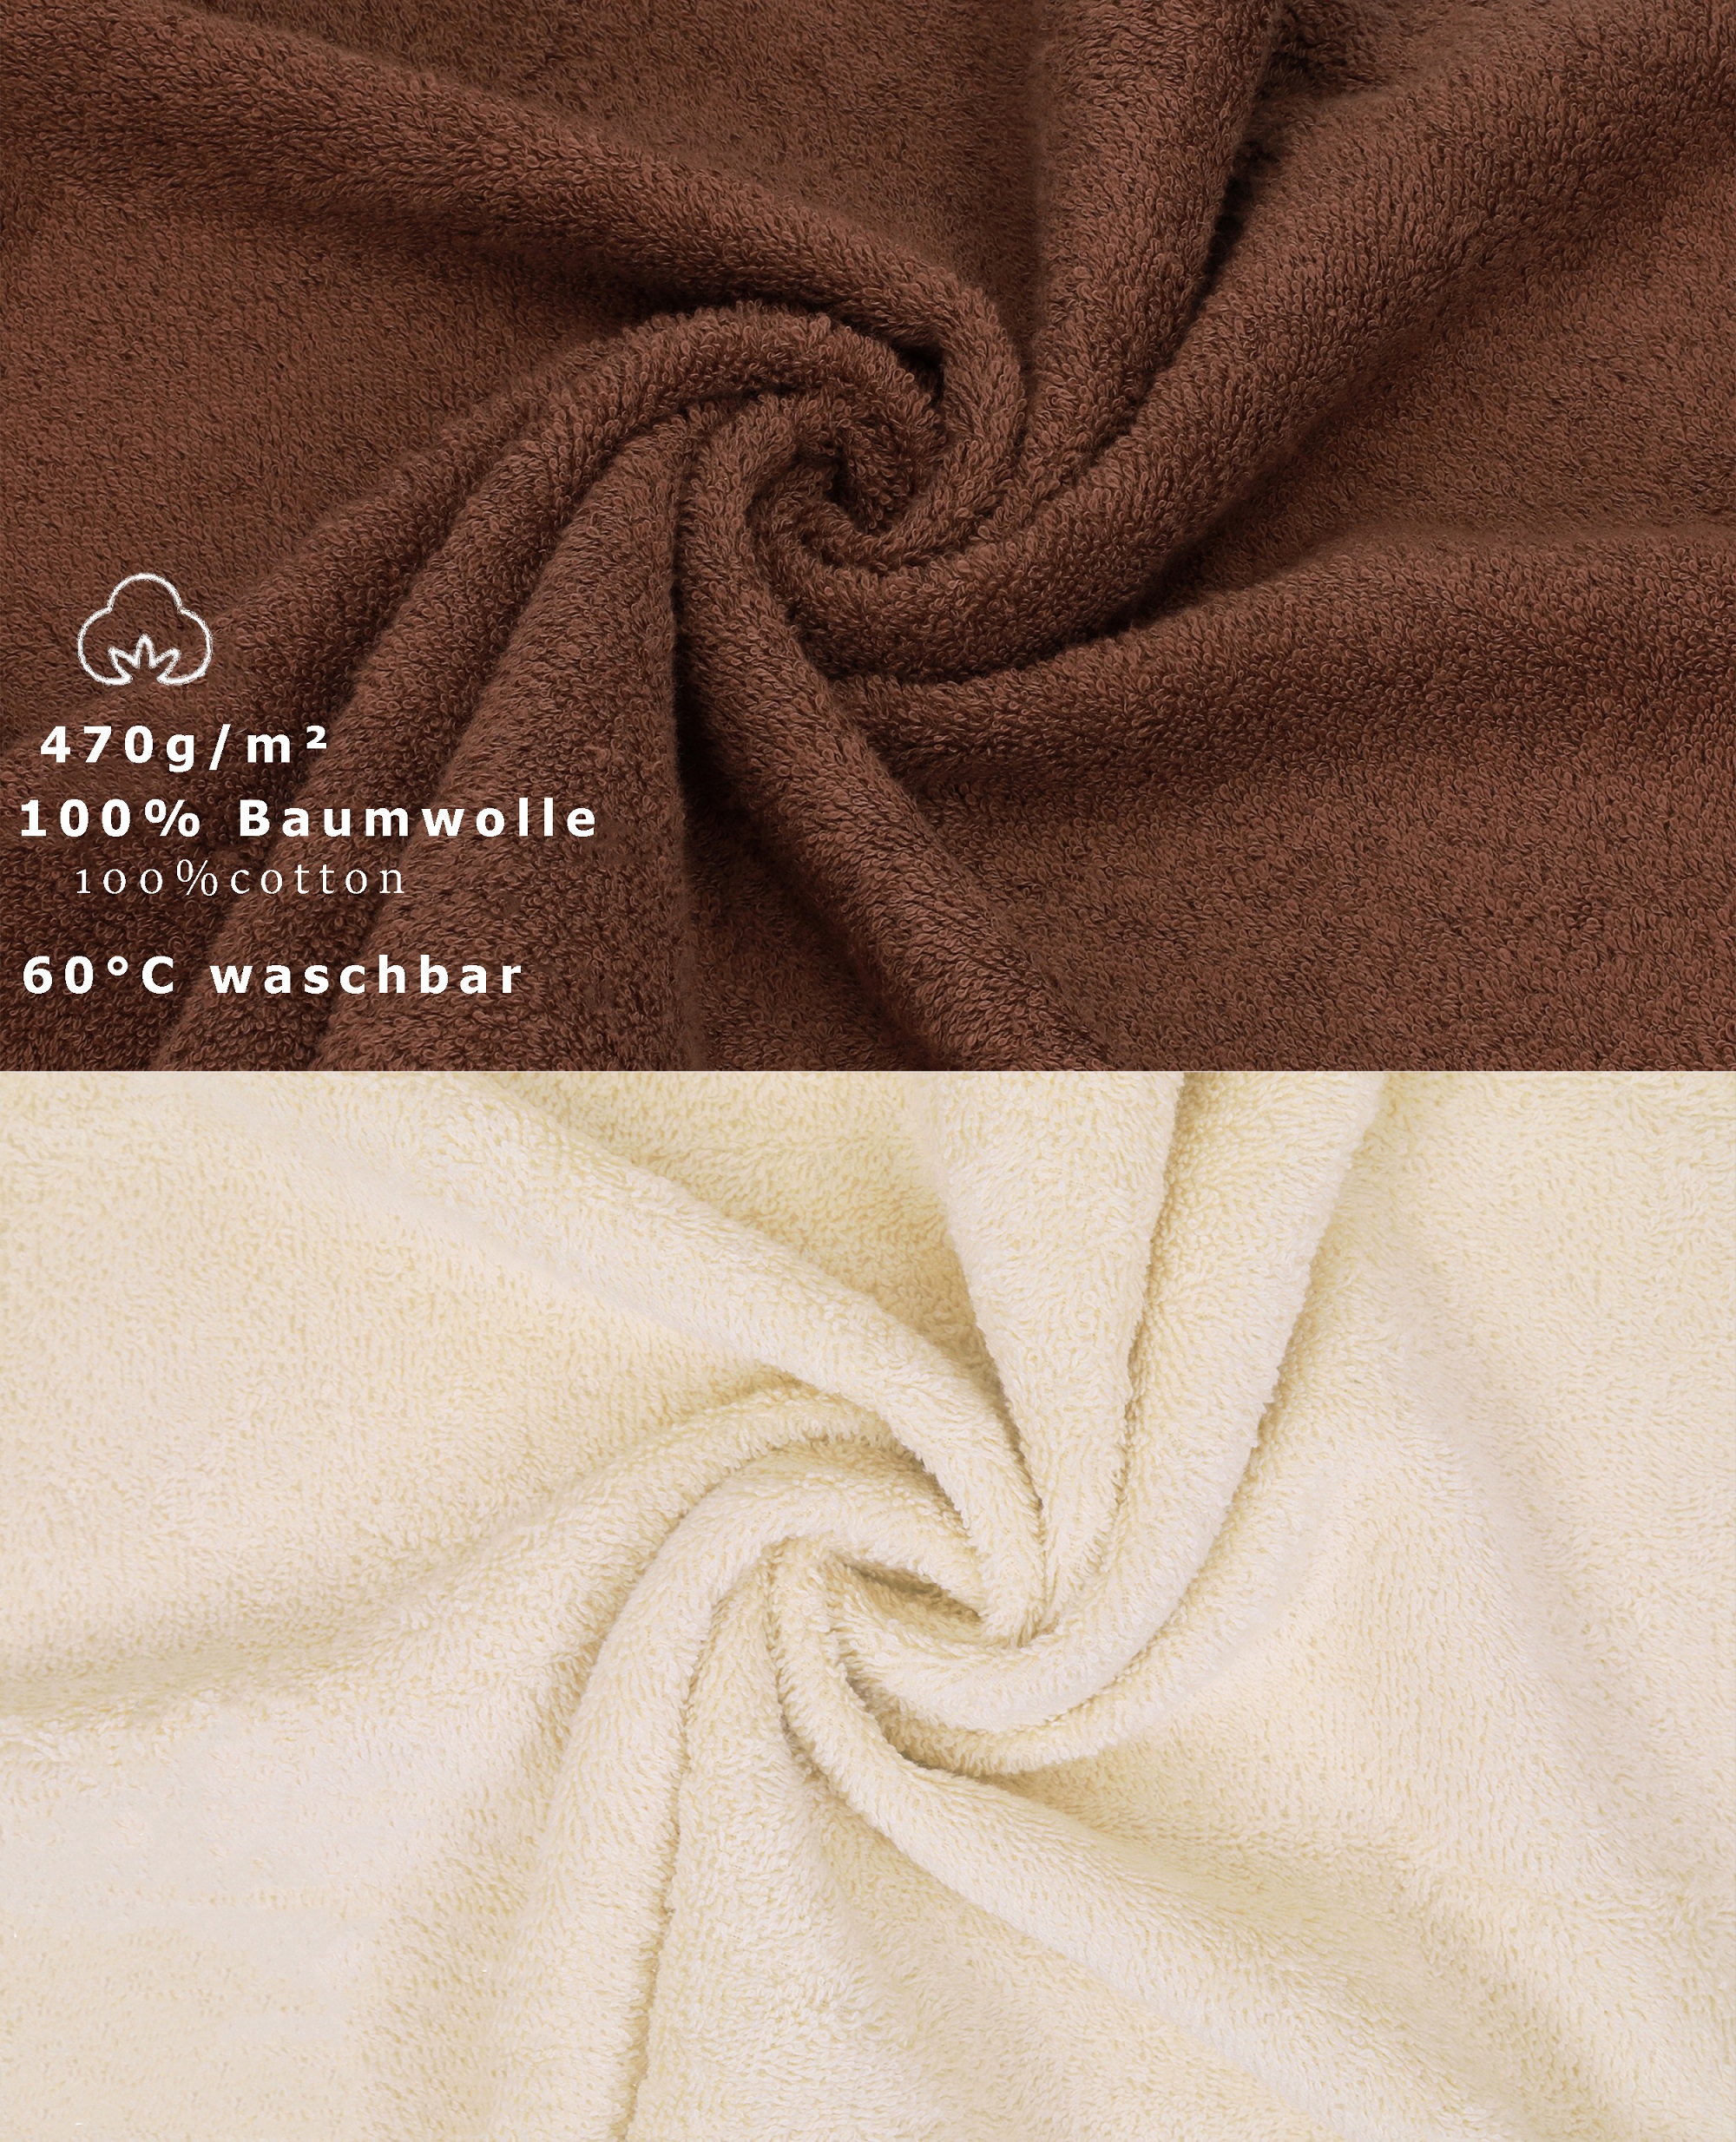 10 uds. Juego de toallas Classic – Premium , color: nuez y beige, 2 toallas  cara